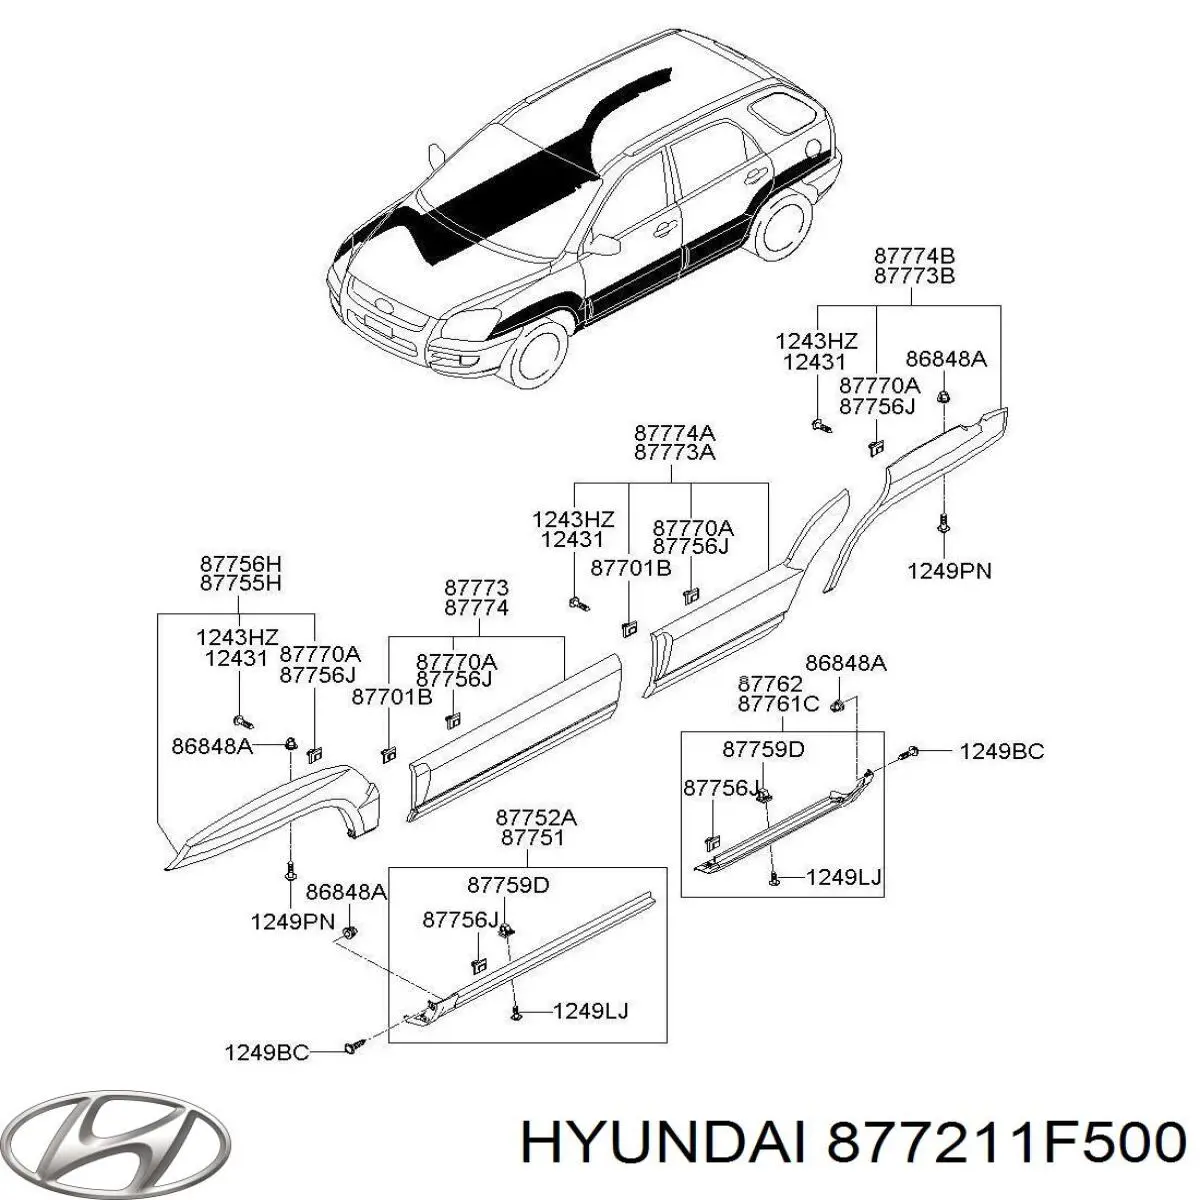 877211F500 Hyundai/Kia moldura de la puerta delantera izquierda